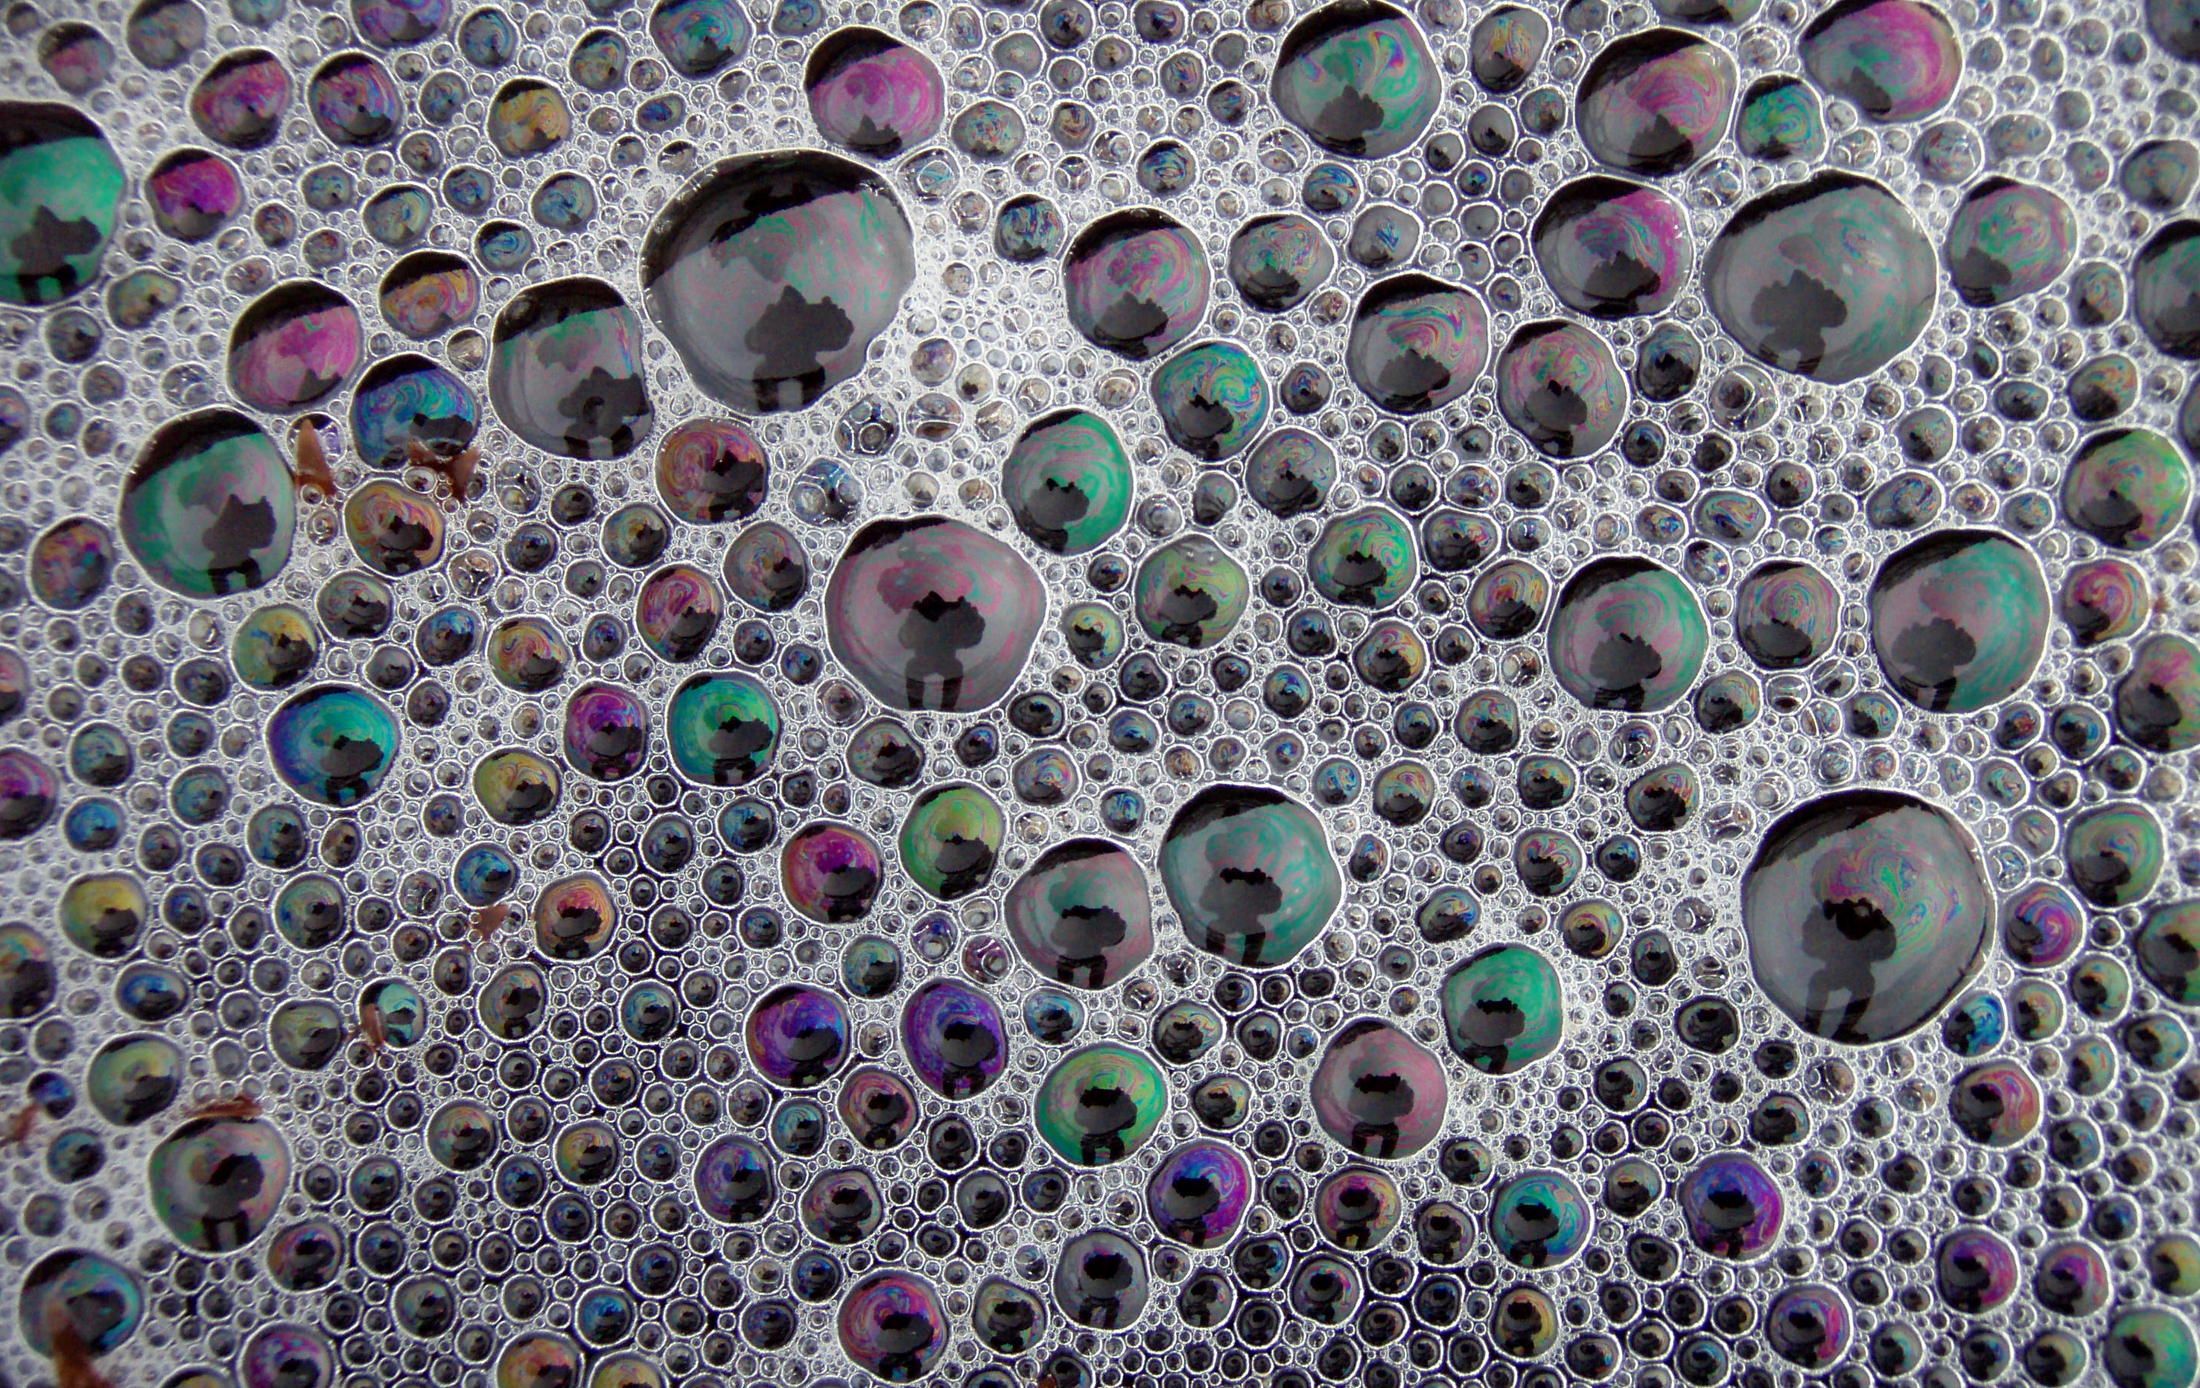 Bubbles at tide pools 2